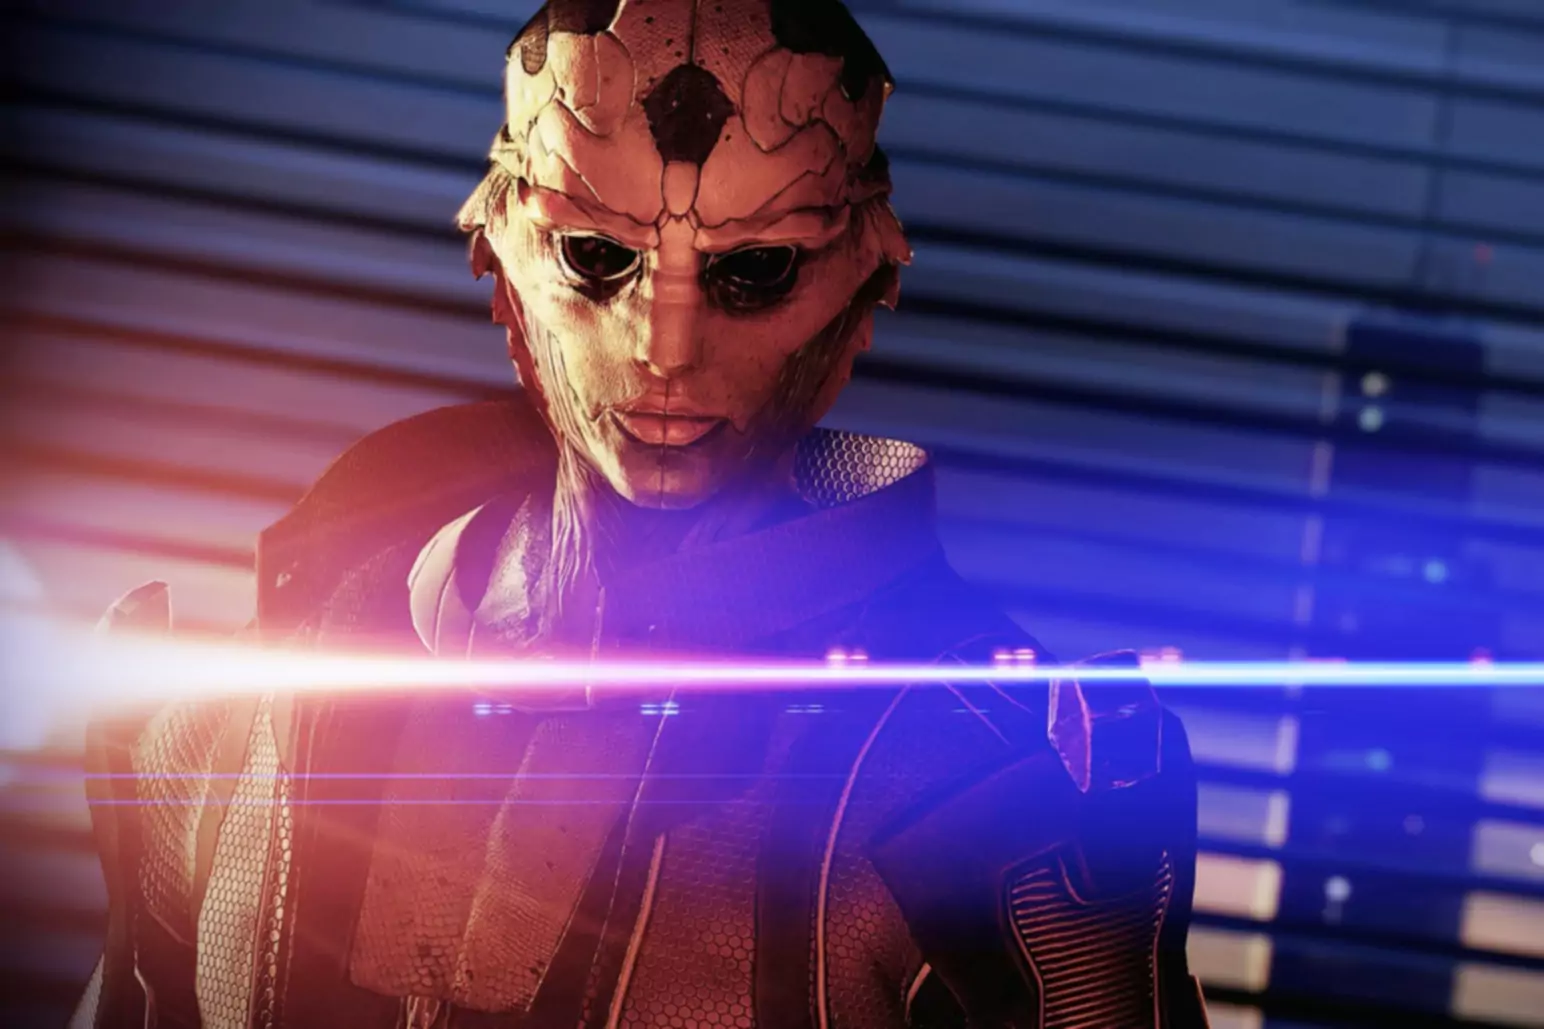 Snímek obrazovky ze hry Mass Effect s postavou v masce osvětlené modrými a oranžovými světly